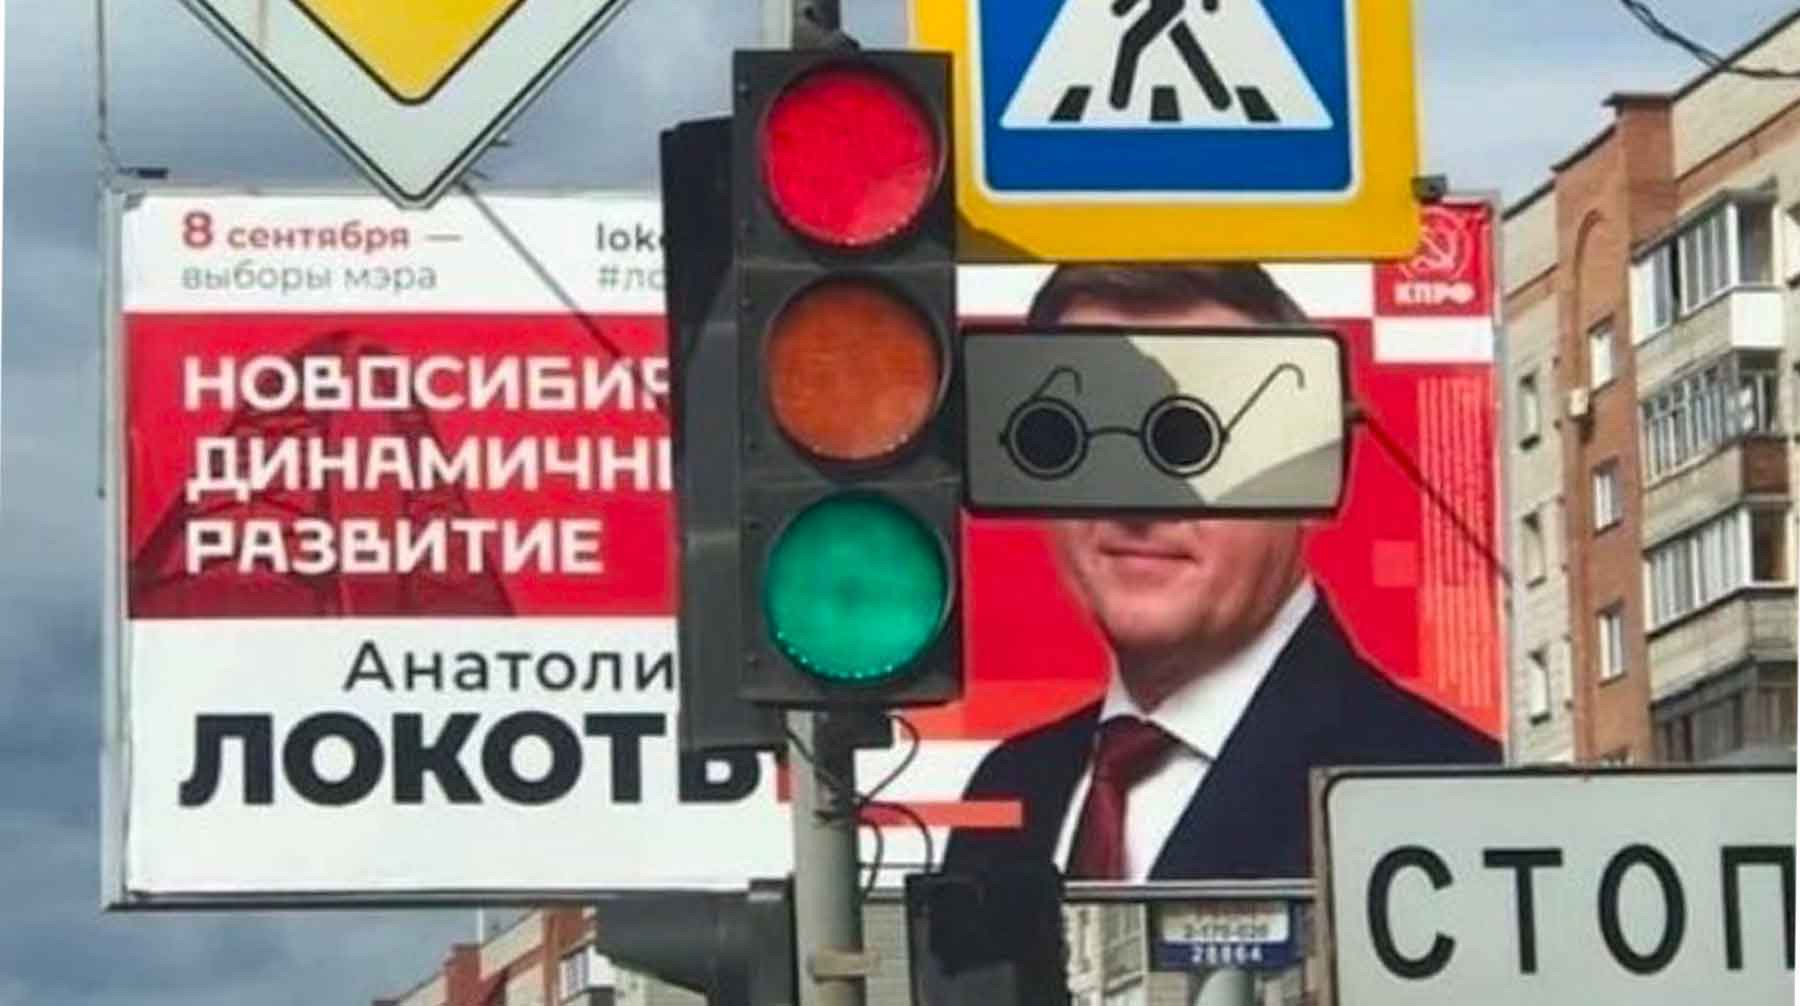 Dailystorm - Суд в Новосибирске отказался снимать с выборов действующего мэра Анатолия Локотя